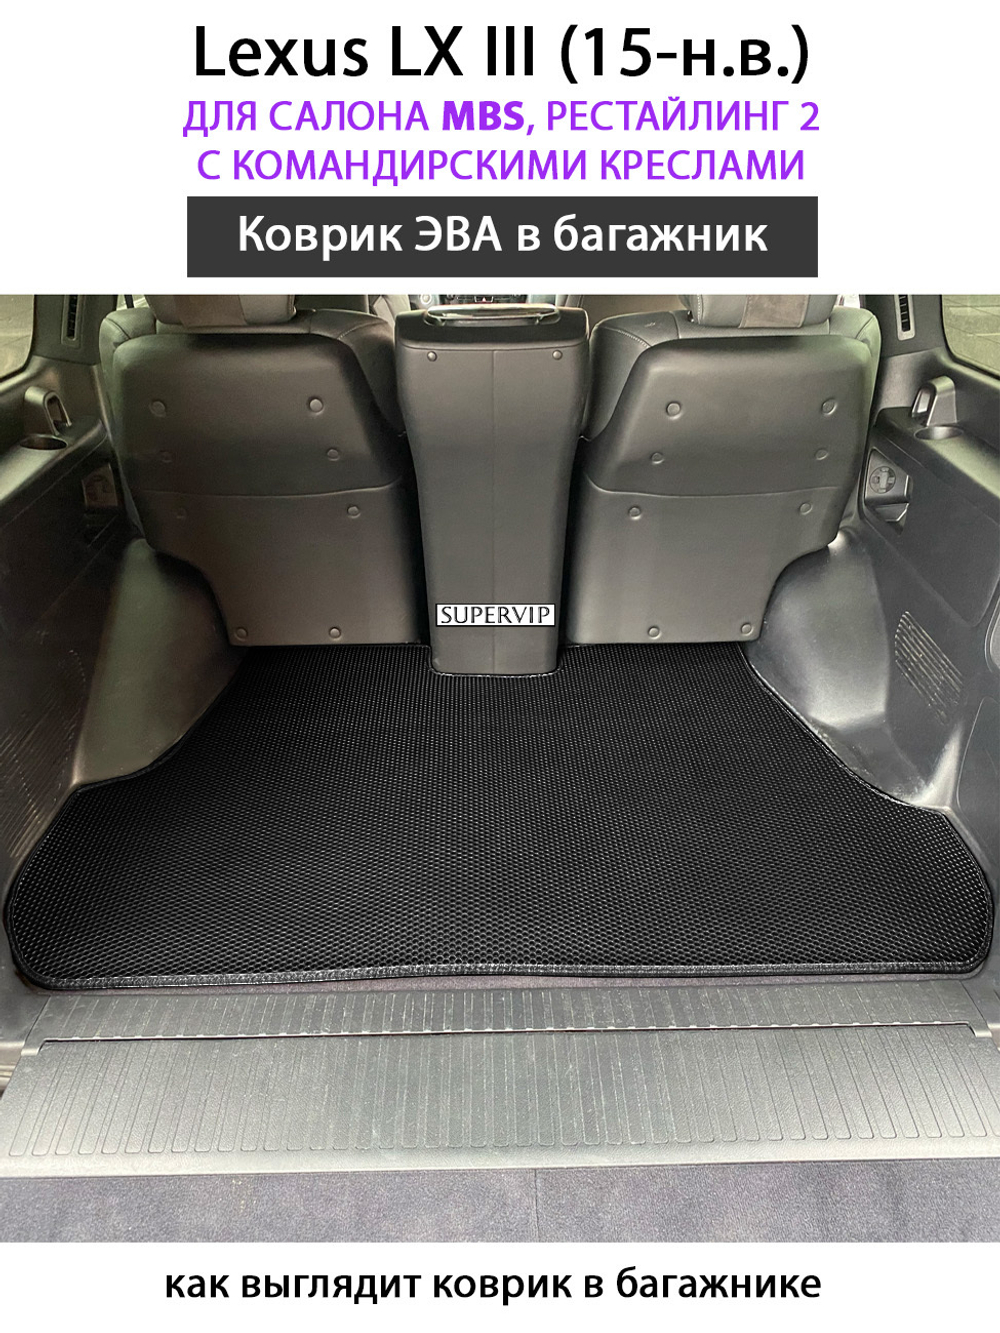 Коврик ЭВО в багажник для Lexus LX III от supervip